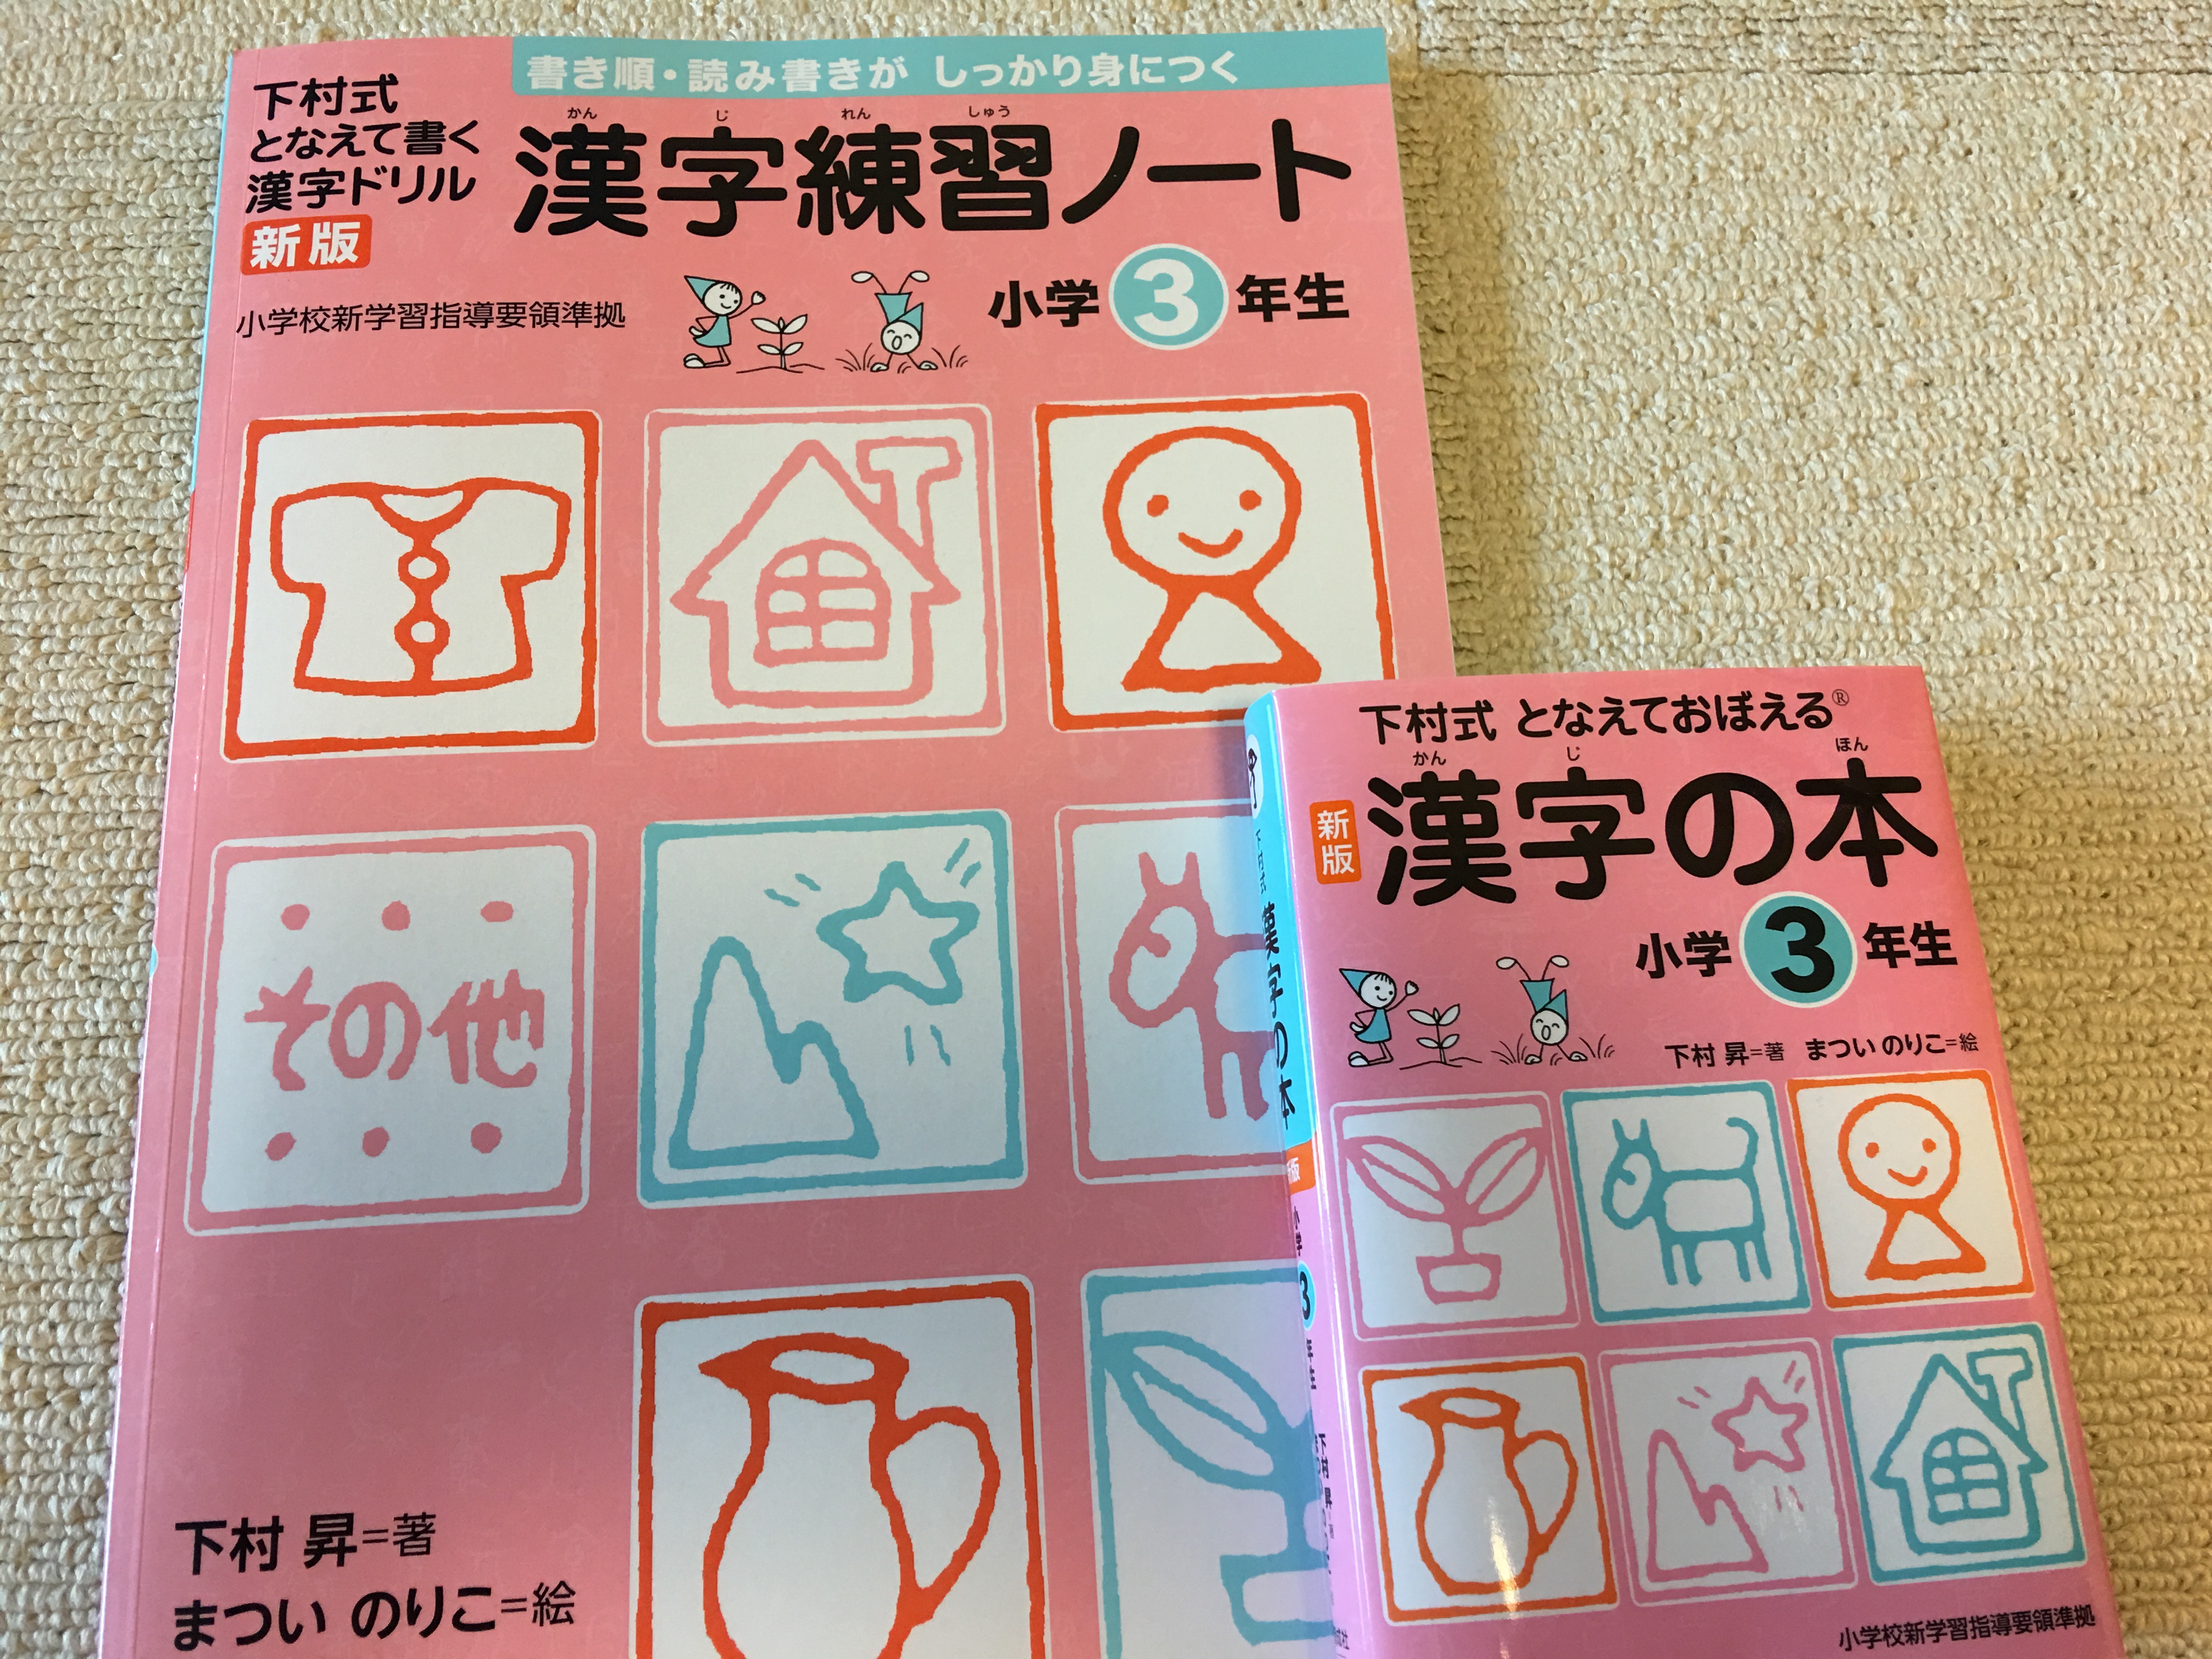 『下村式 となえて書く漢字ドリル 漢字練習ノート』と『下村式 漢字の本』